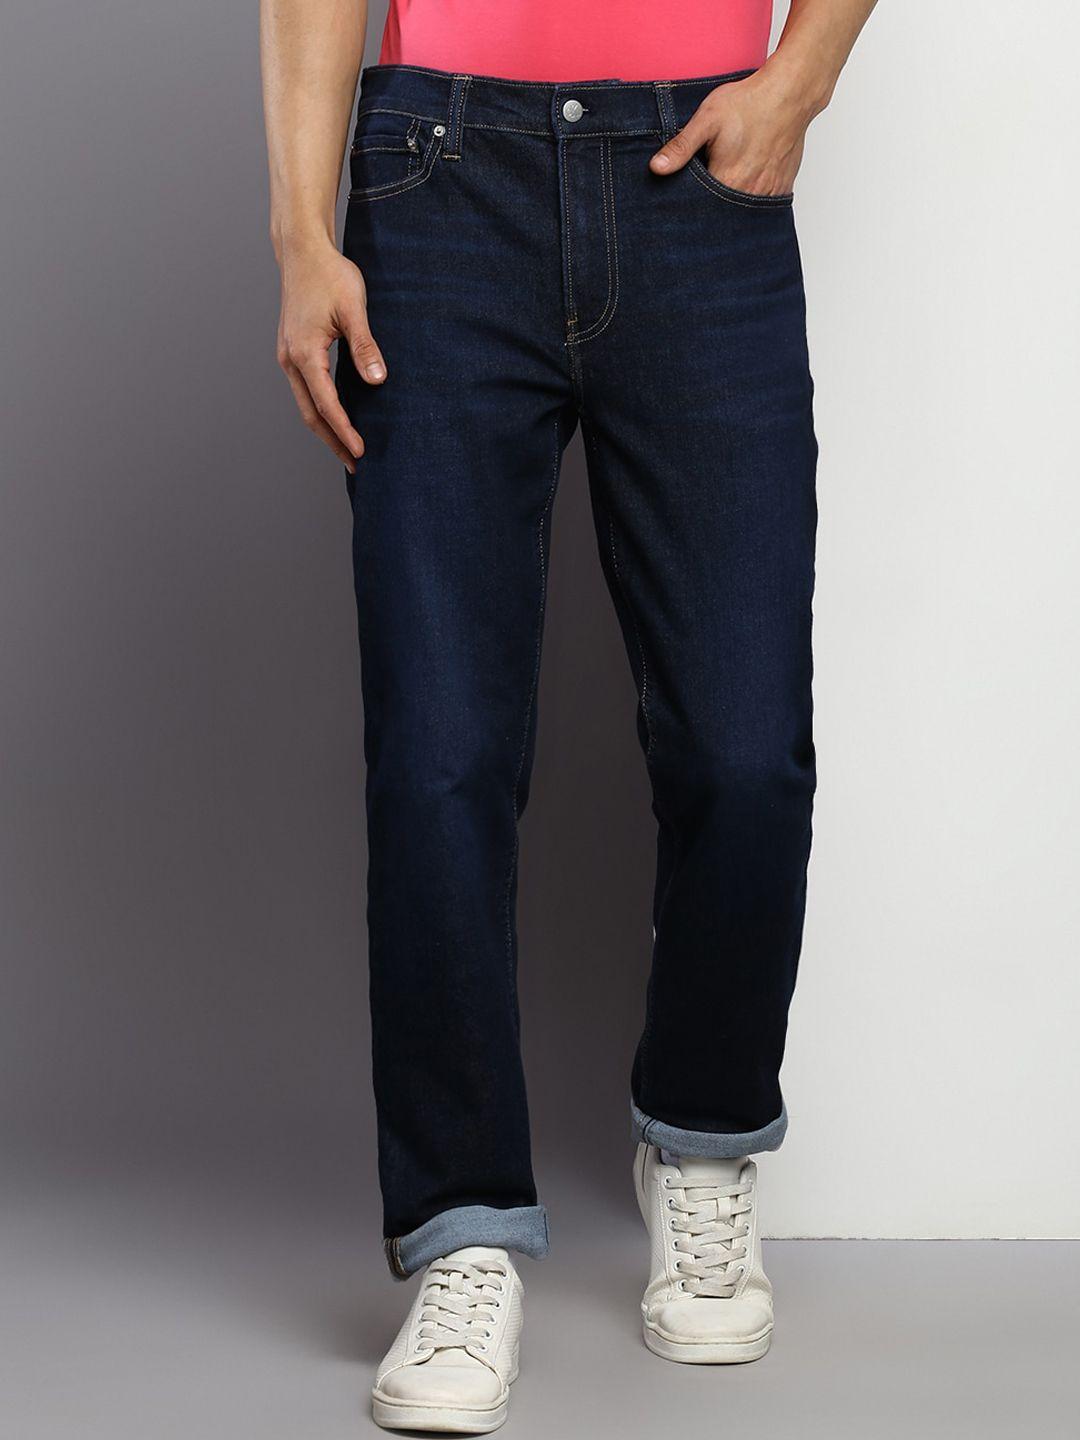 calvin-klein-jeans-men-mid-rise-slim-fit-jeans